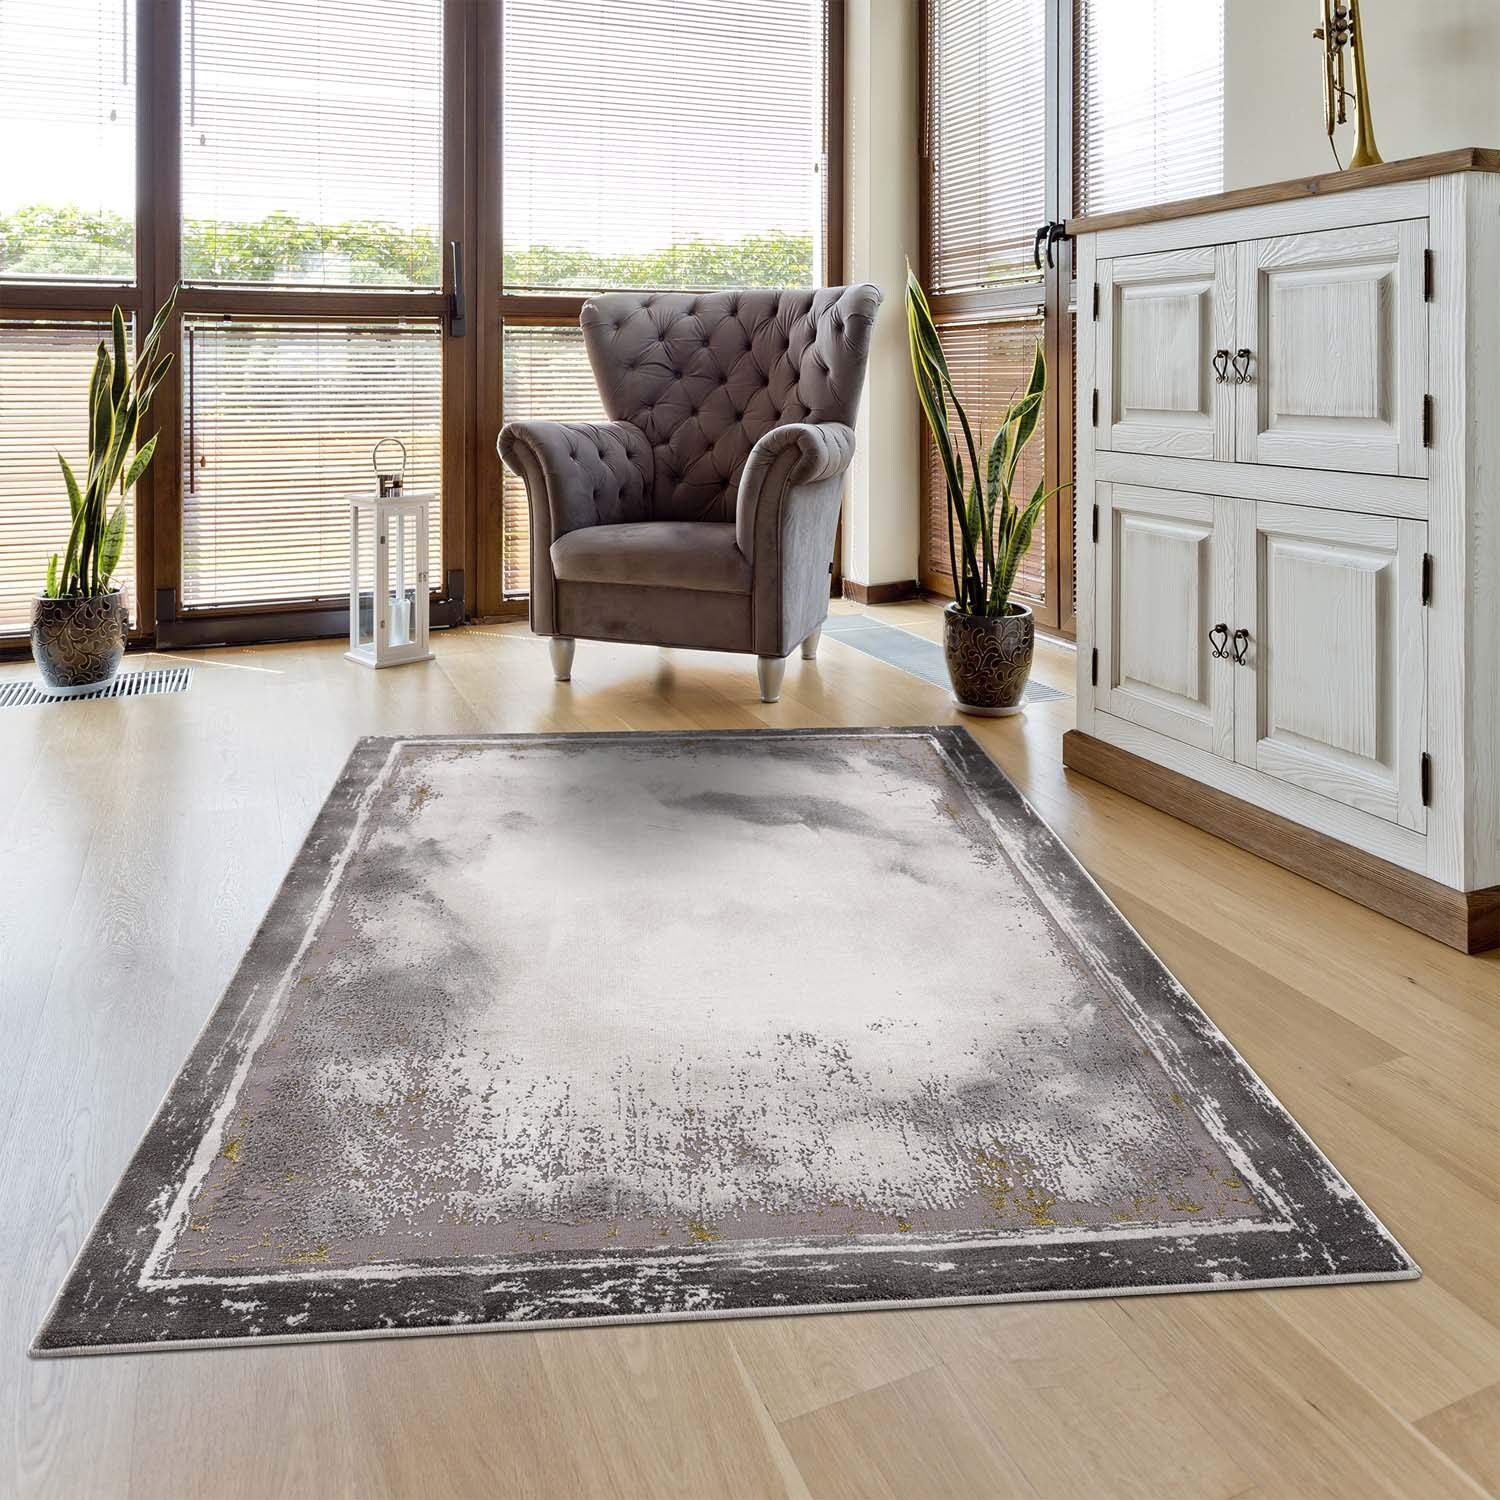 carpet city Teppich Bordüre Wohnzimmer - 80x150 cm Grau Golden Meliert - Moderne Teppiche Kurzflor